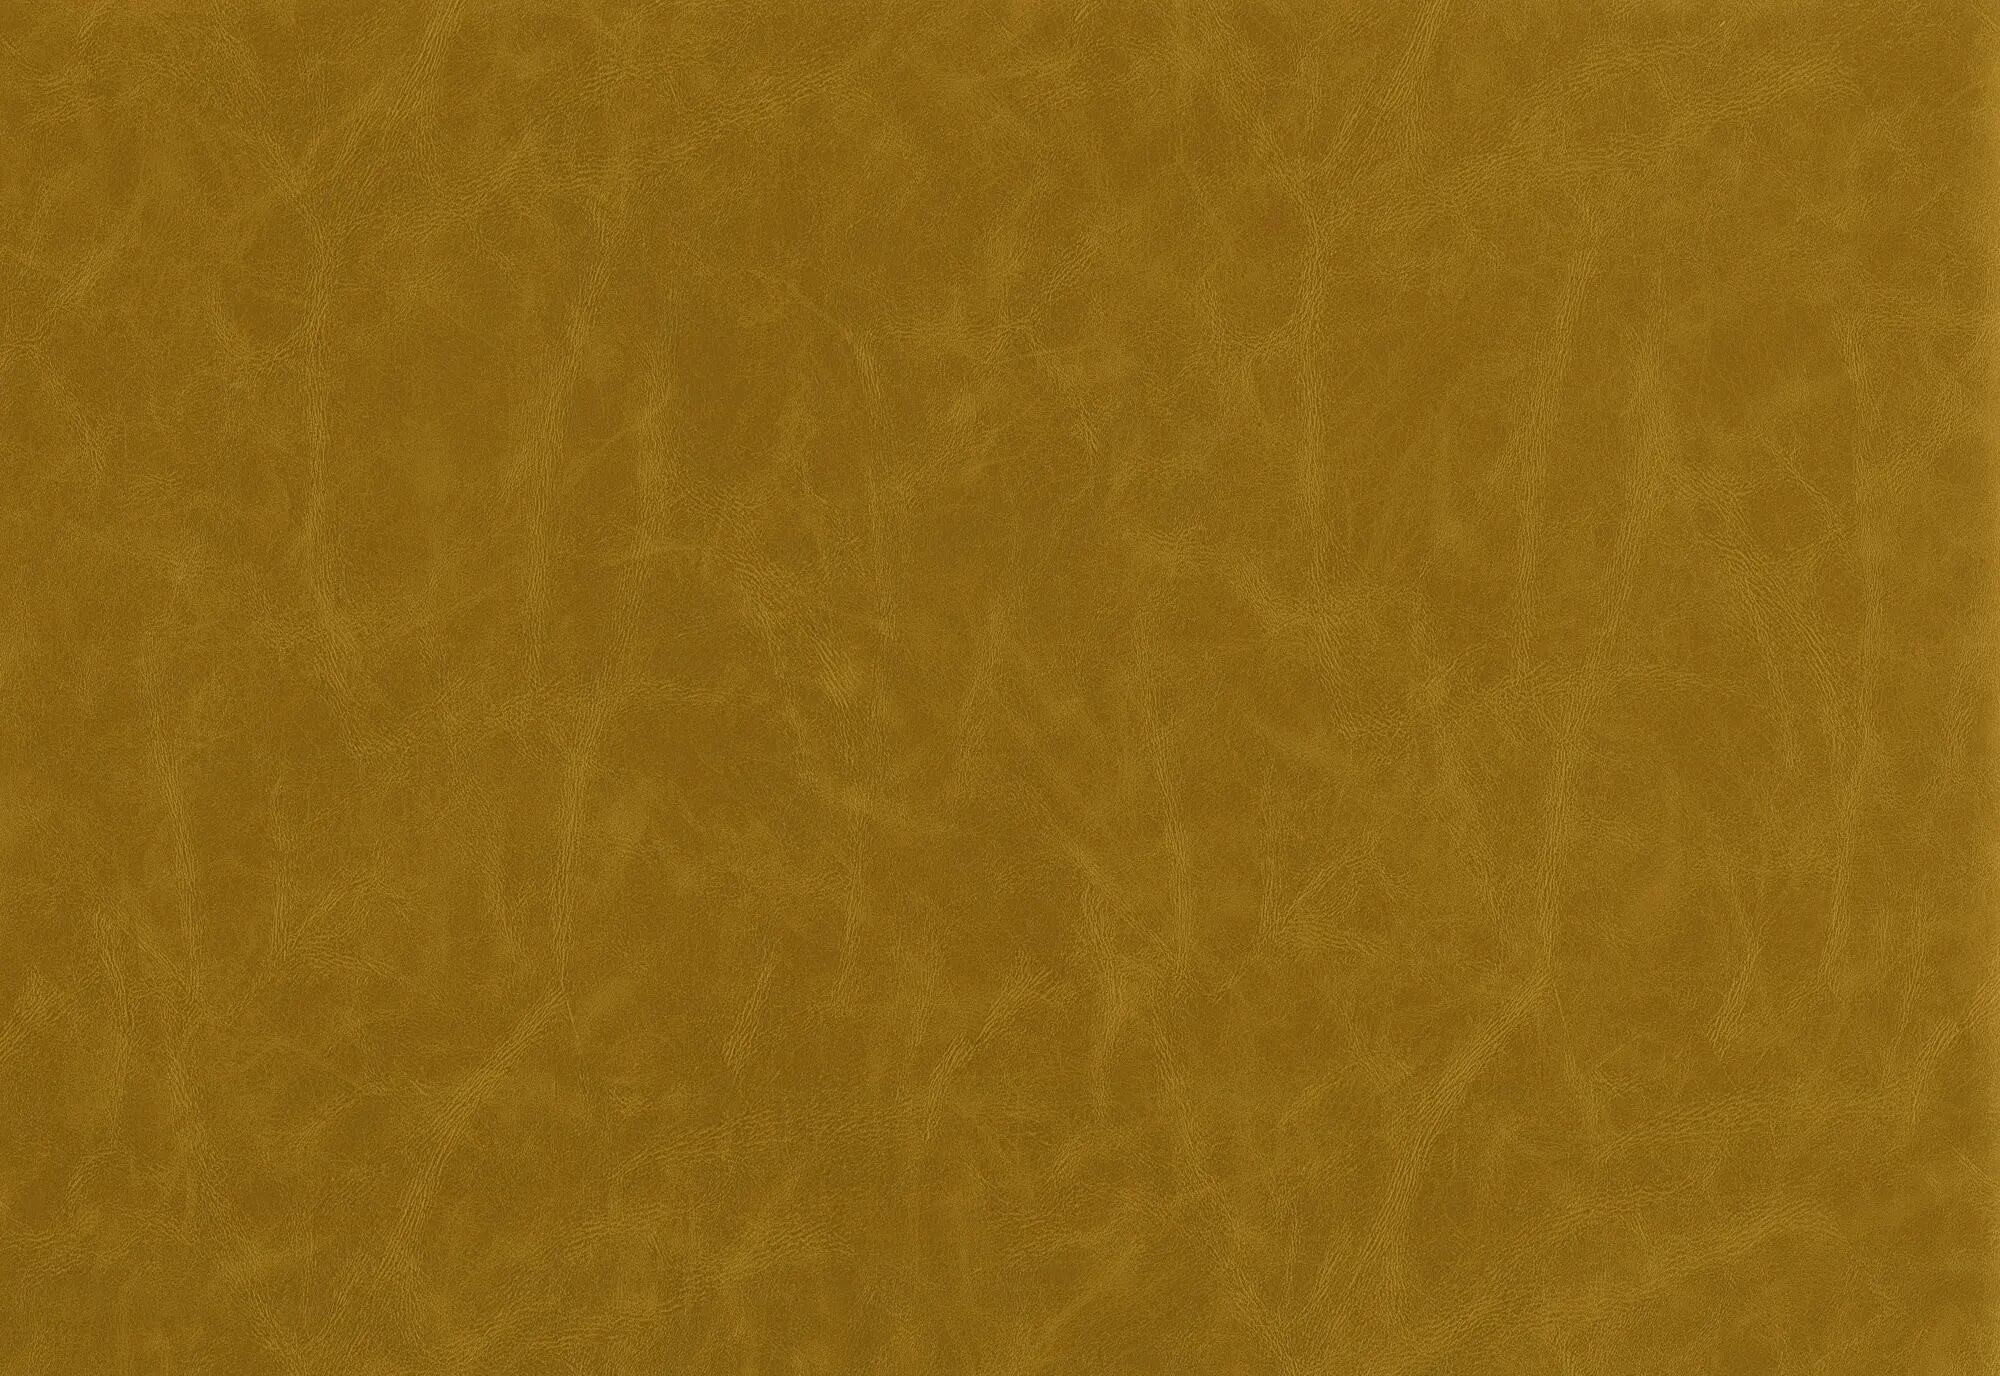 Tela al corte tapicería imitación piel prima mustard(mostaza) ancho 140 cm